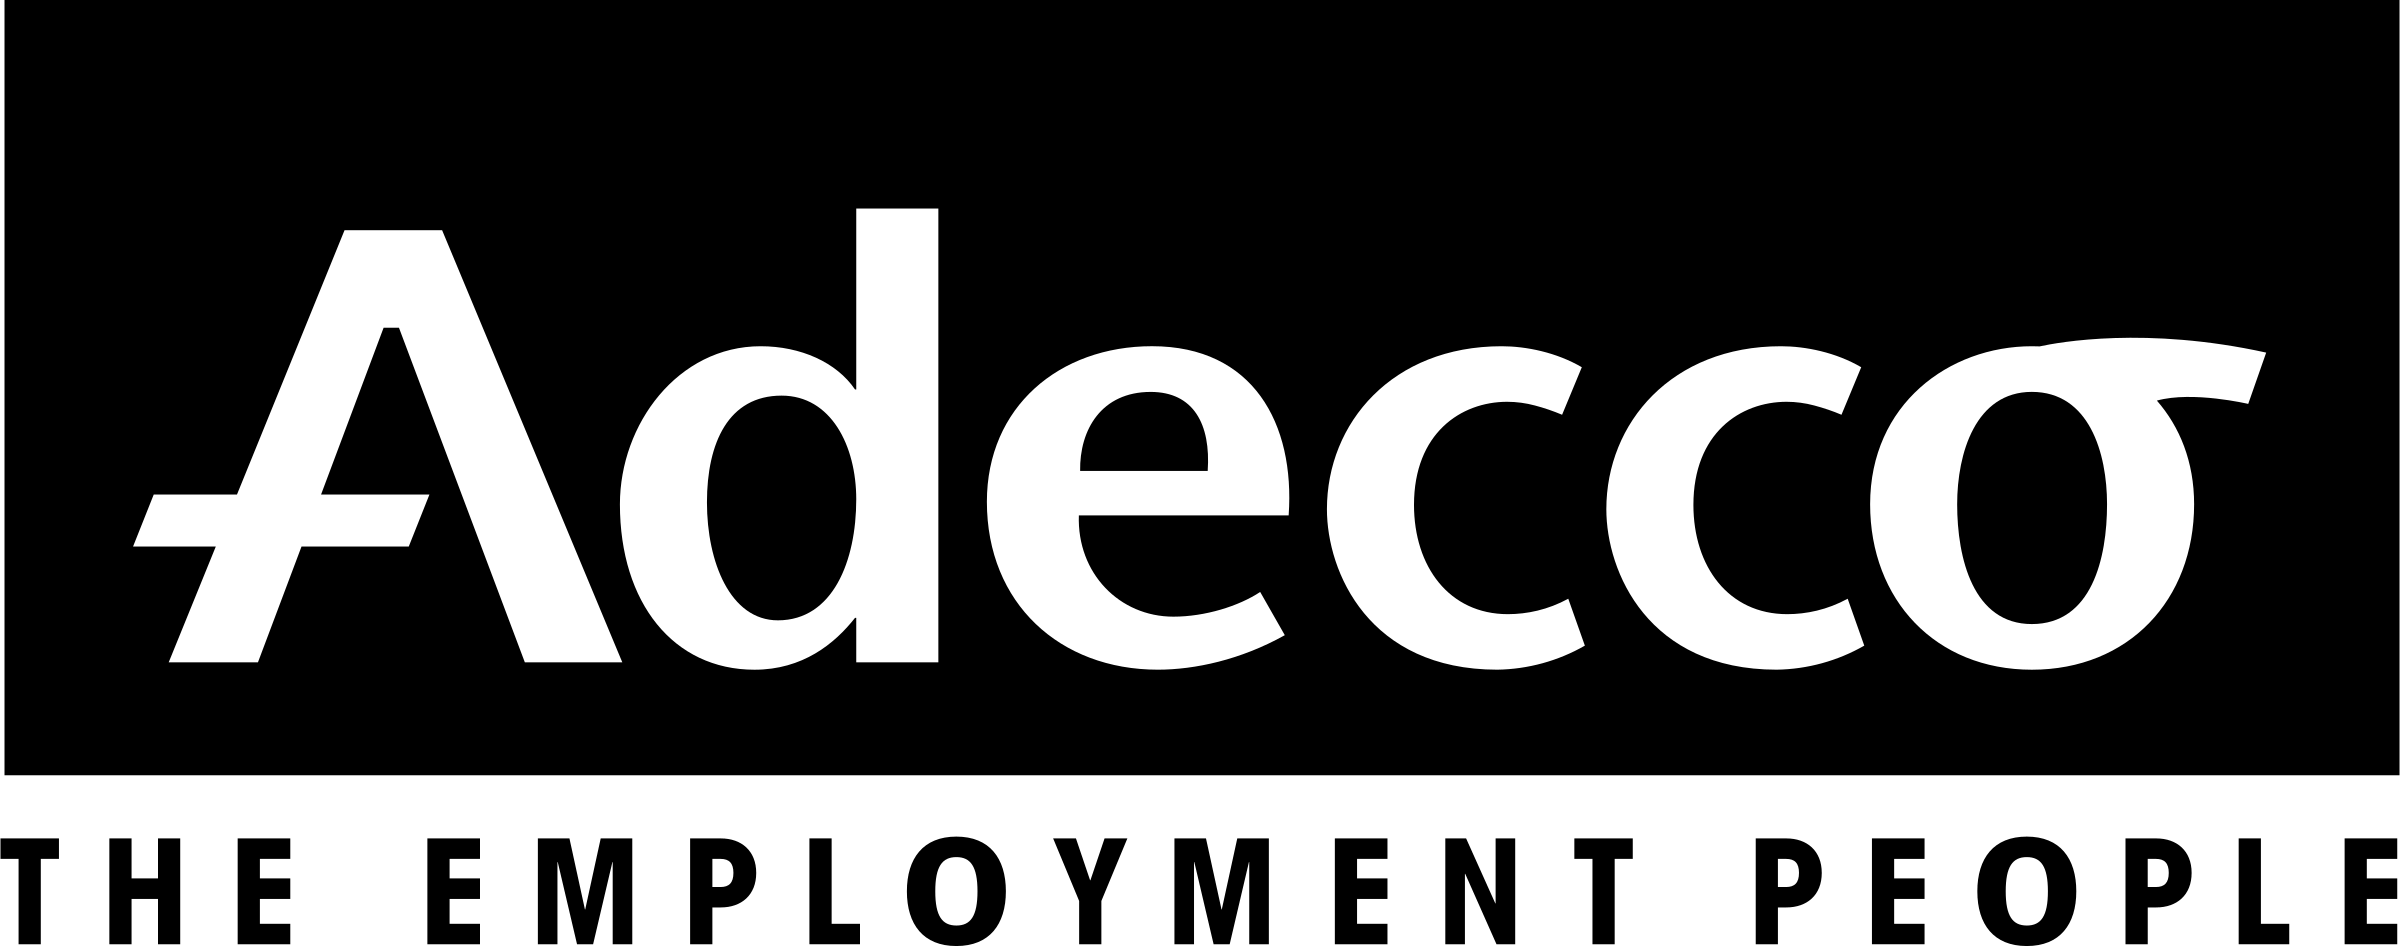 Adecco Logo - Adecco Logo PNG Transparent & SVG Vector